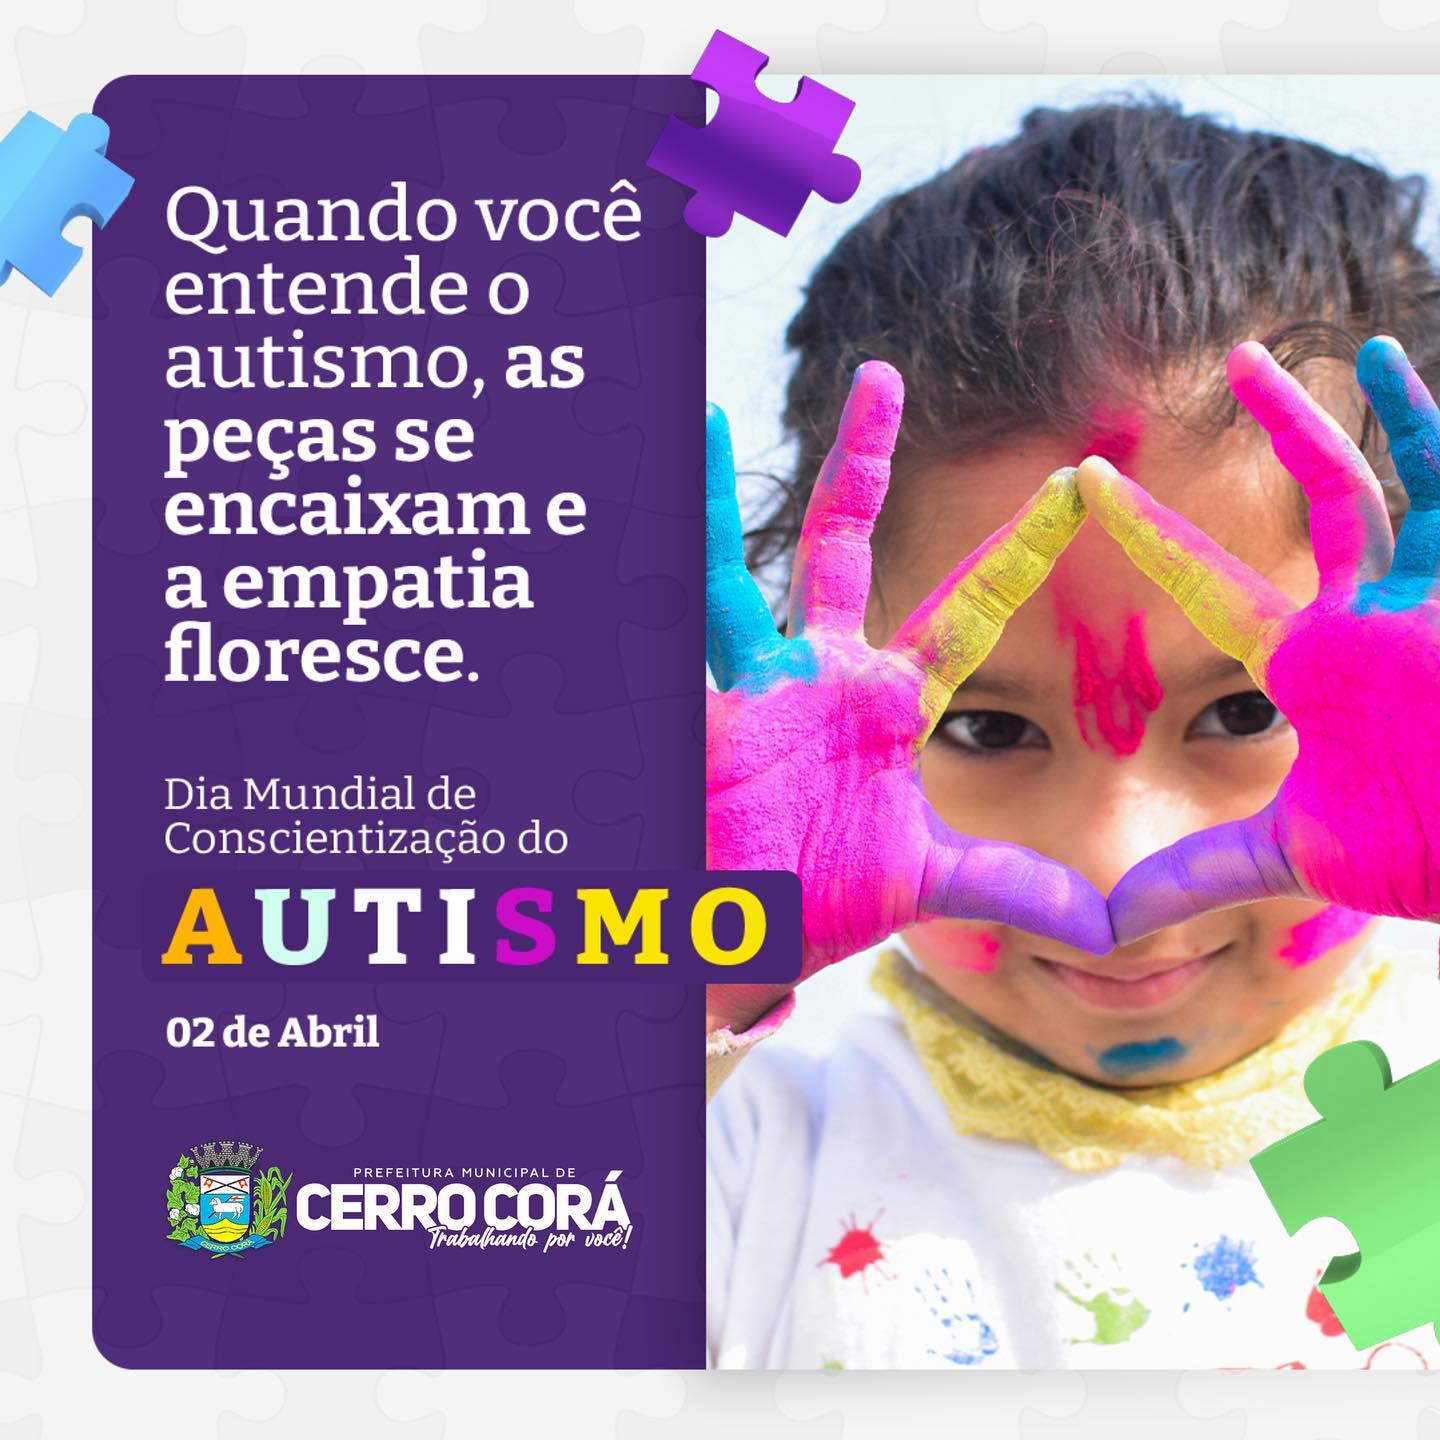 Cerro Corá: Dia mundial de Conscientização do Autismo